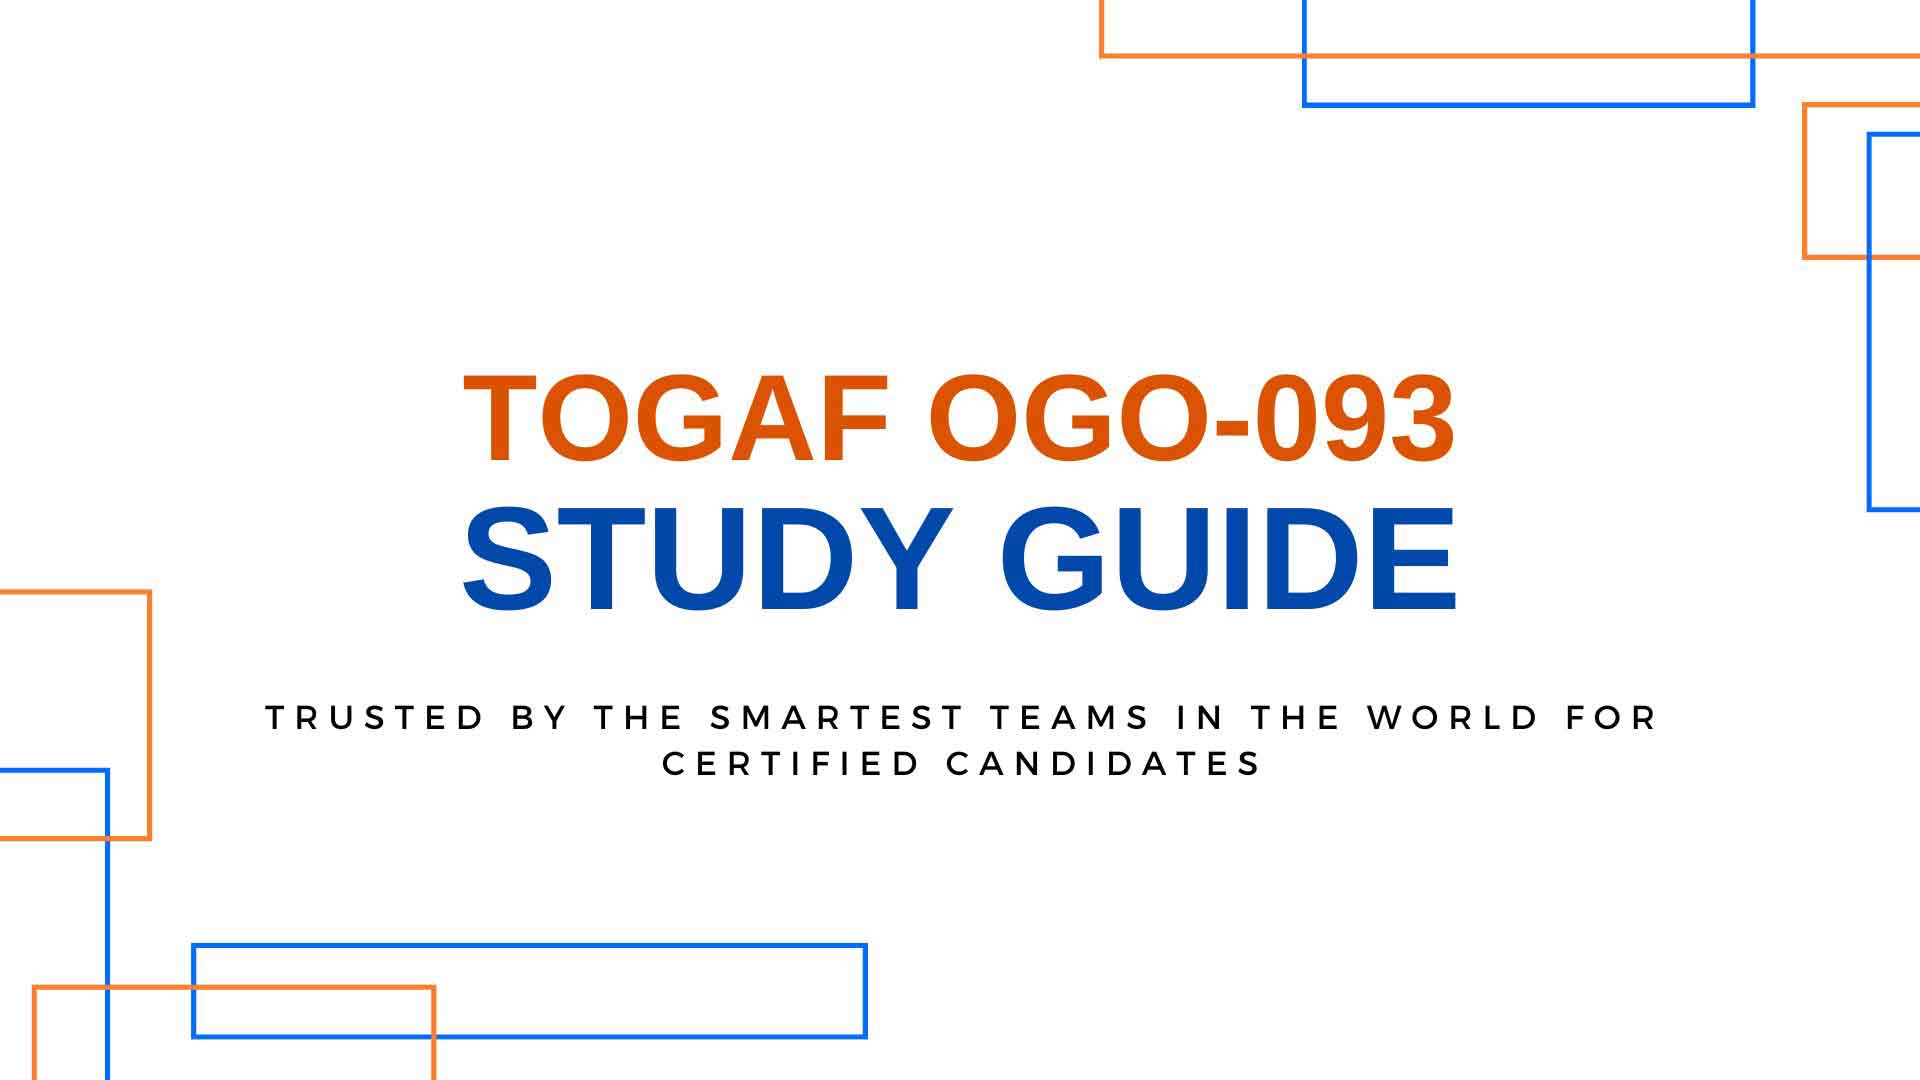 TOGAF OGO-093 Study Guide